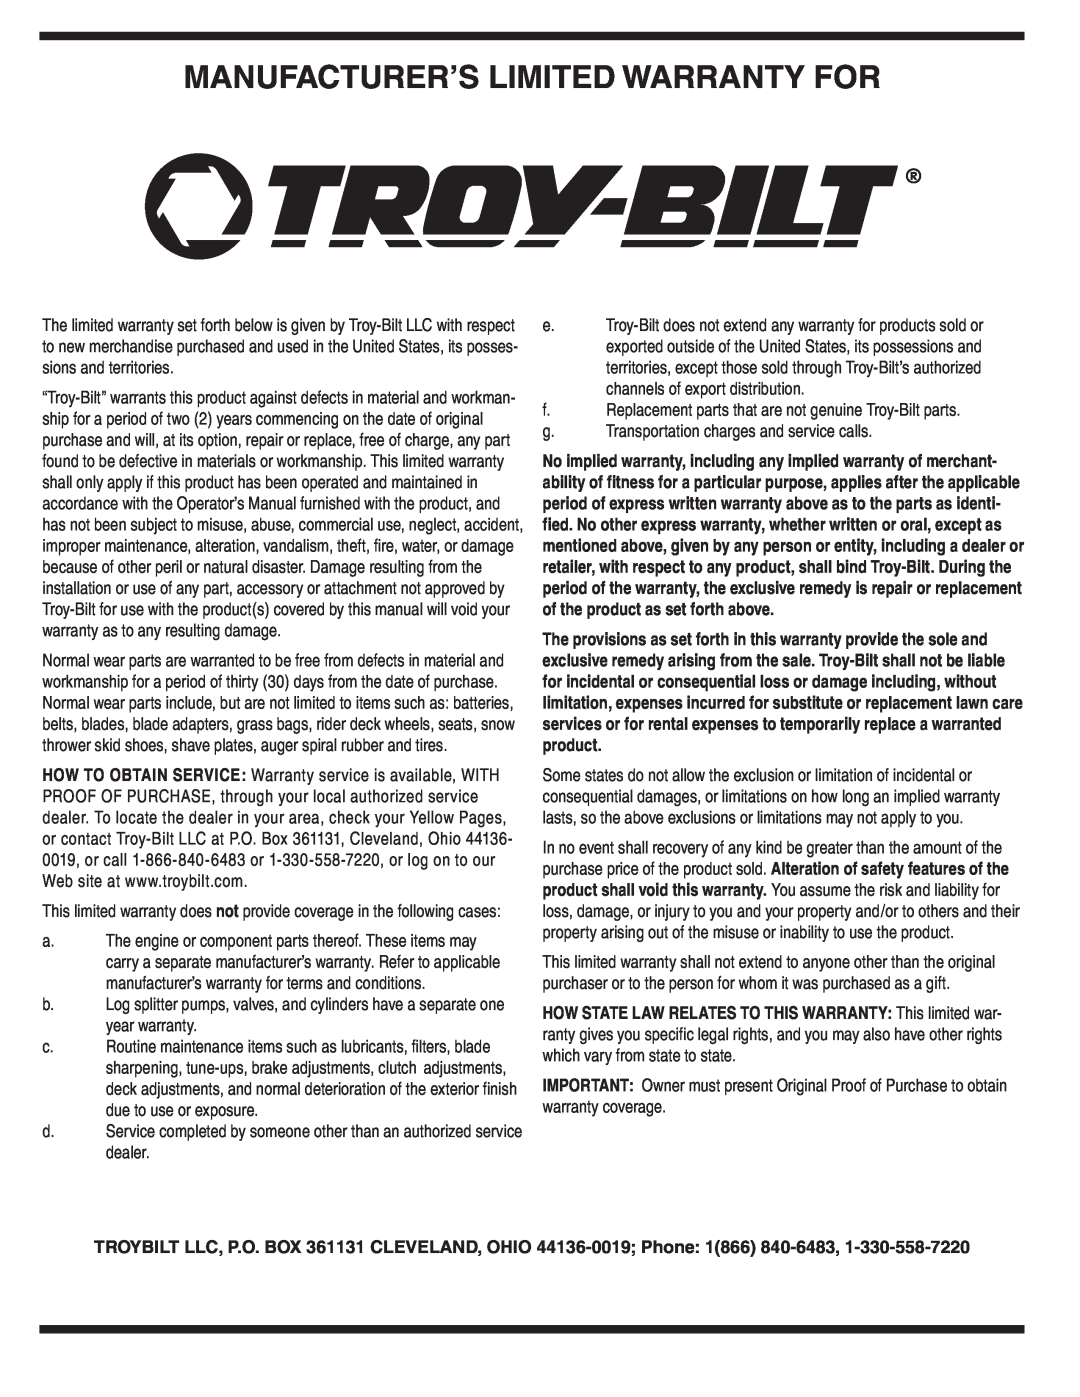 Troy-Bilt Series 540 manual Manufacturer’S Limited Warranty For 